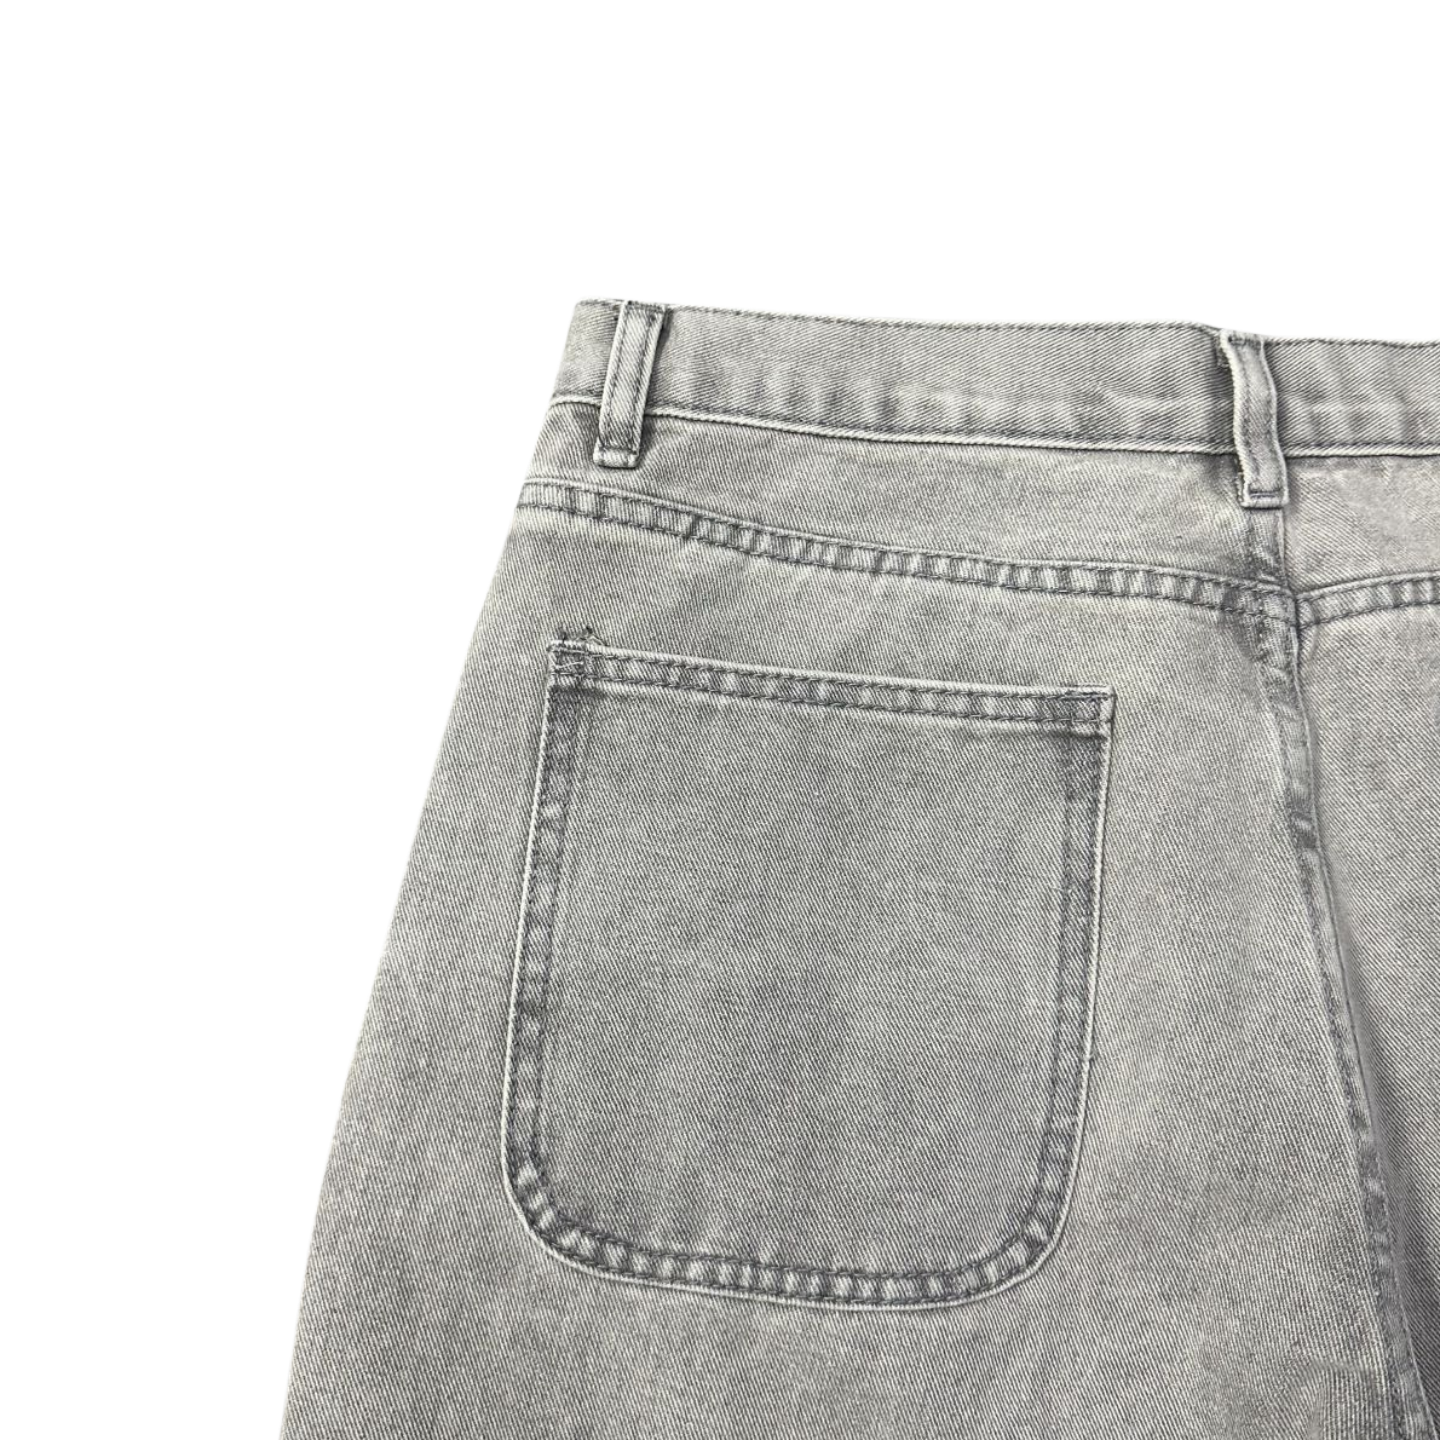 Broken Planet Jeans pour Hommes et Femmes Pantalons imprimés étoiles Streetwear Pantalons Droits Larges décontractés - Denim Clair